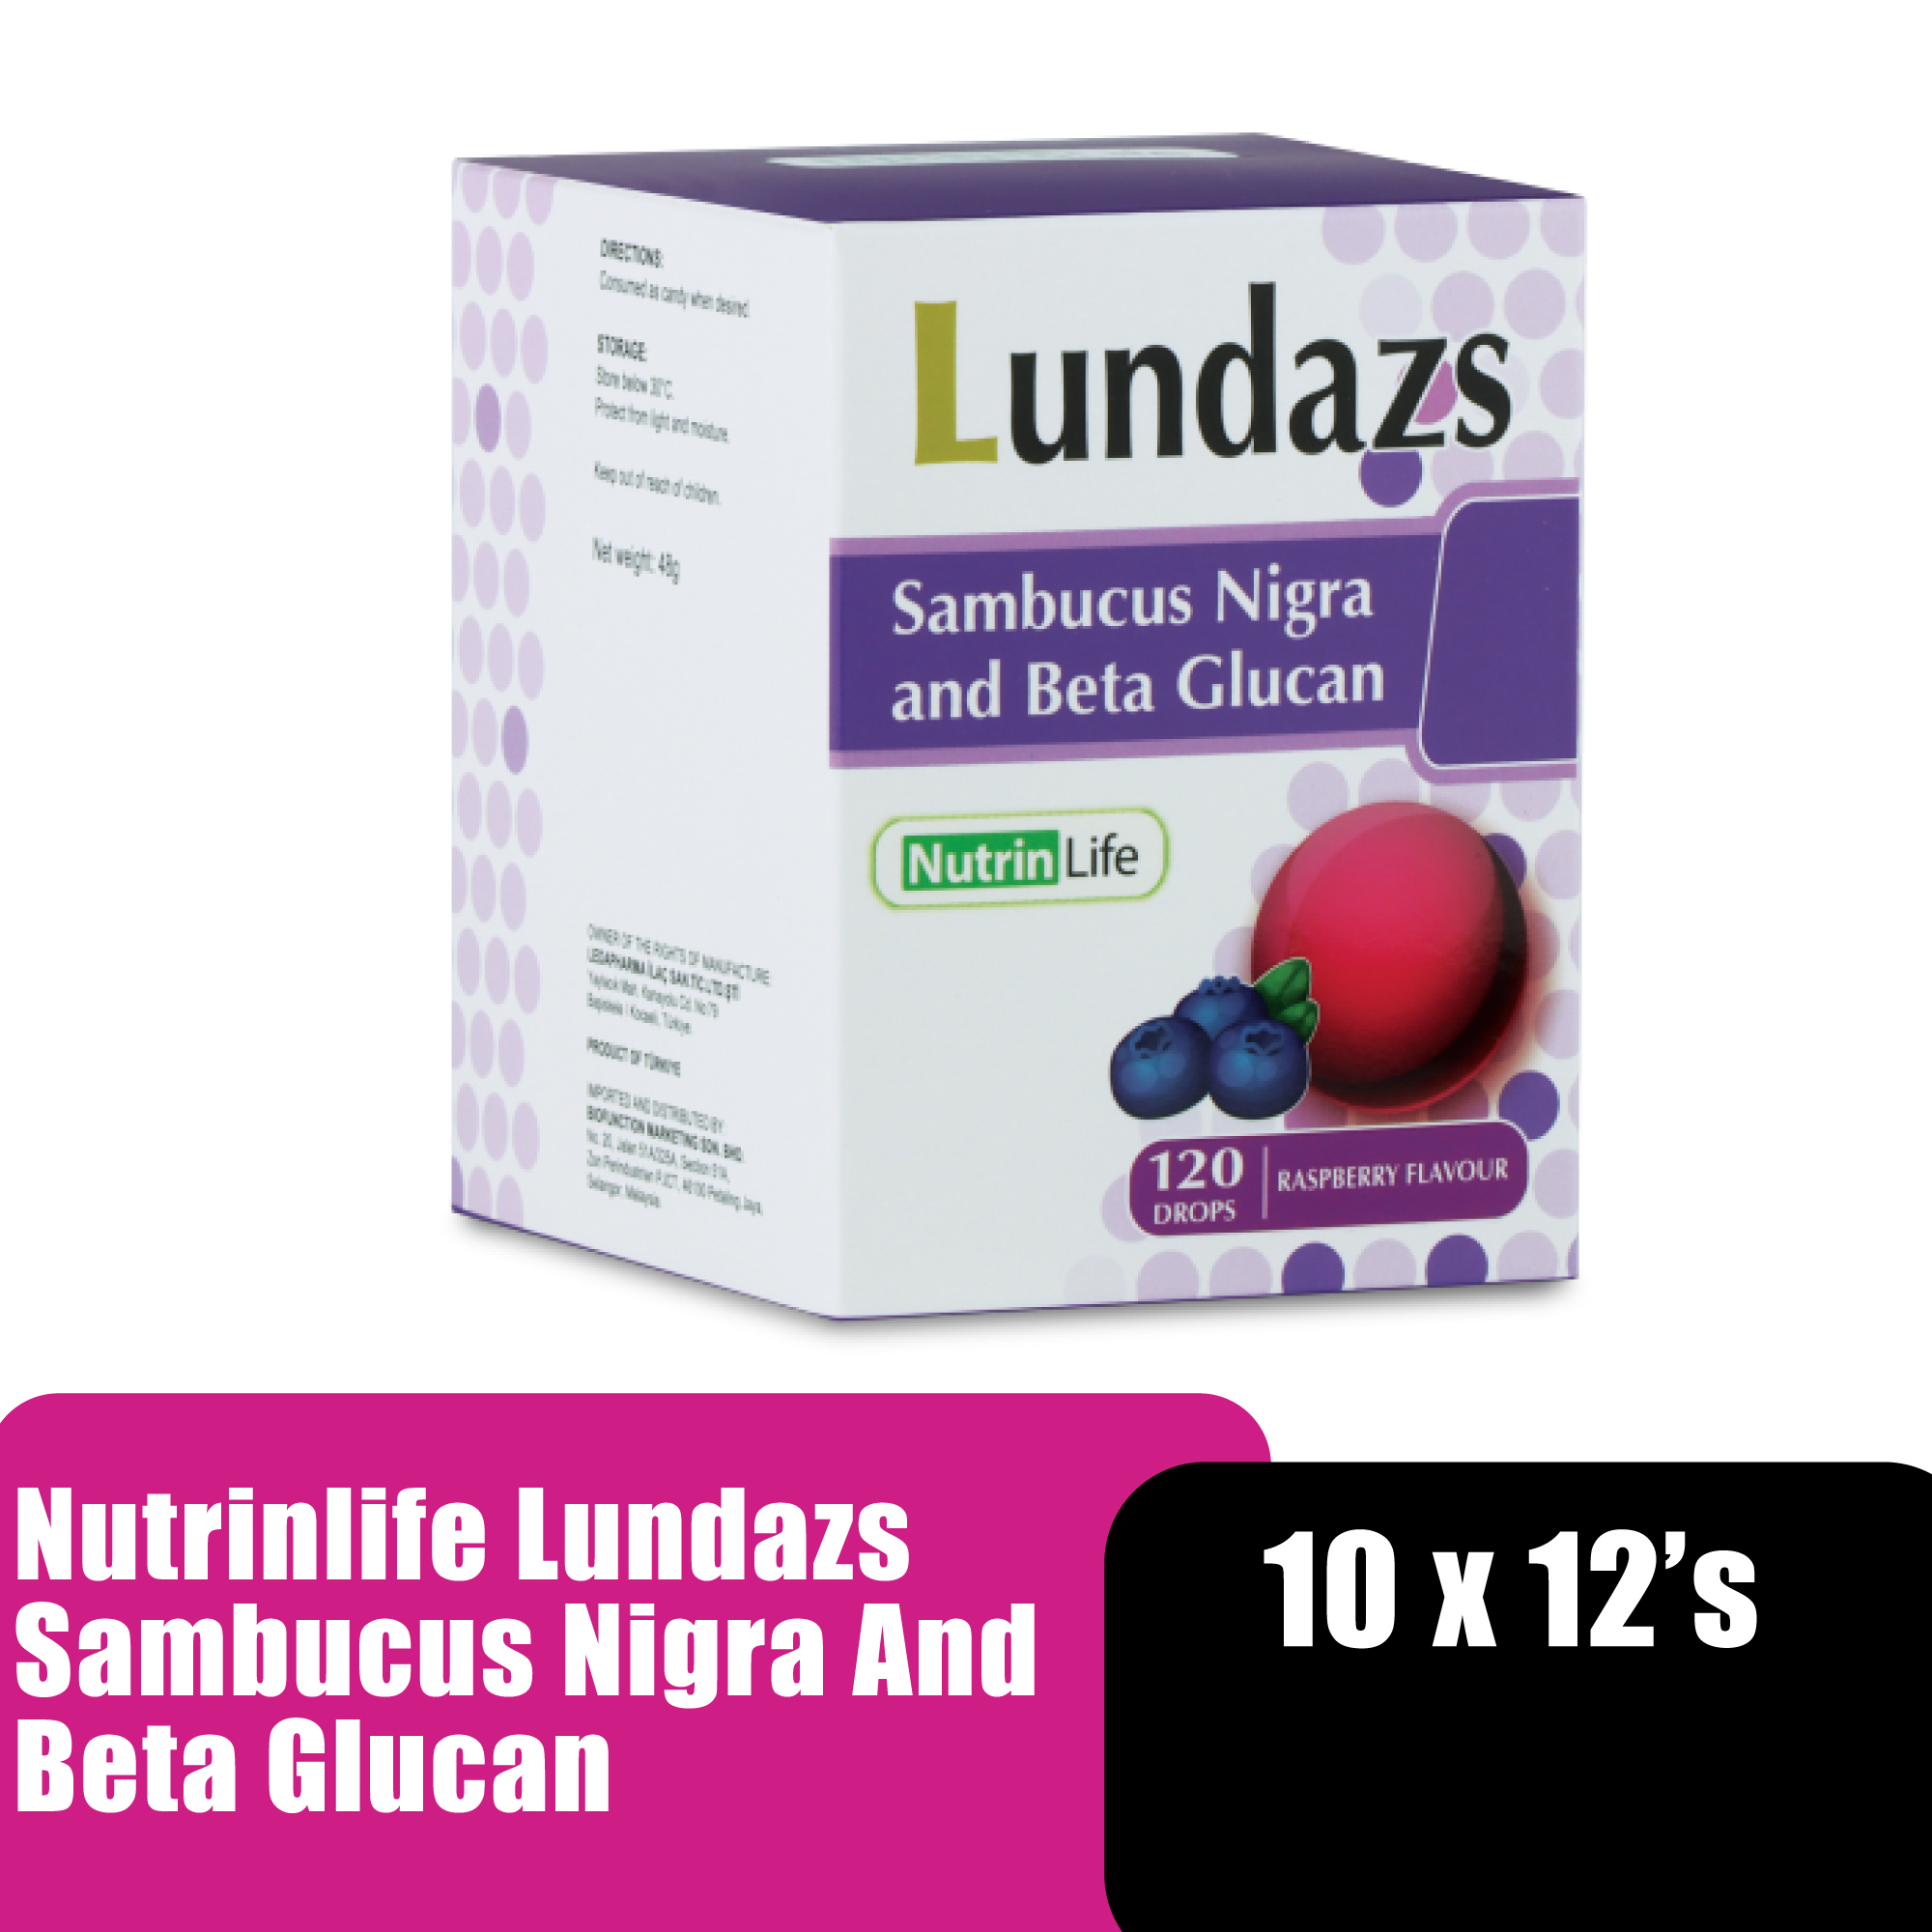 NUTRINLIFE Lundazs Sambucu Nigra and Beta Glucan (10 x 12's), Sore Throat Cough Relief Lozenges, Ubat Sakit Tekak, Ubat